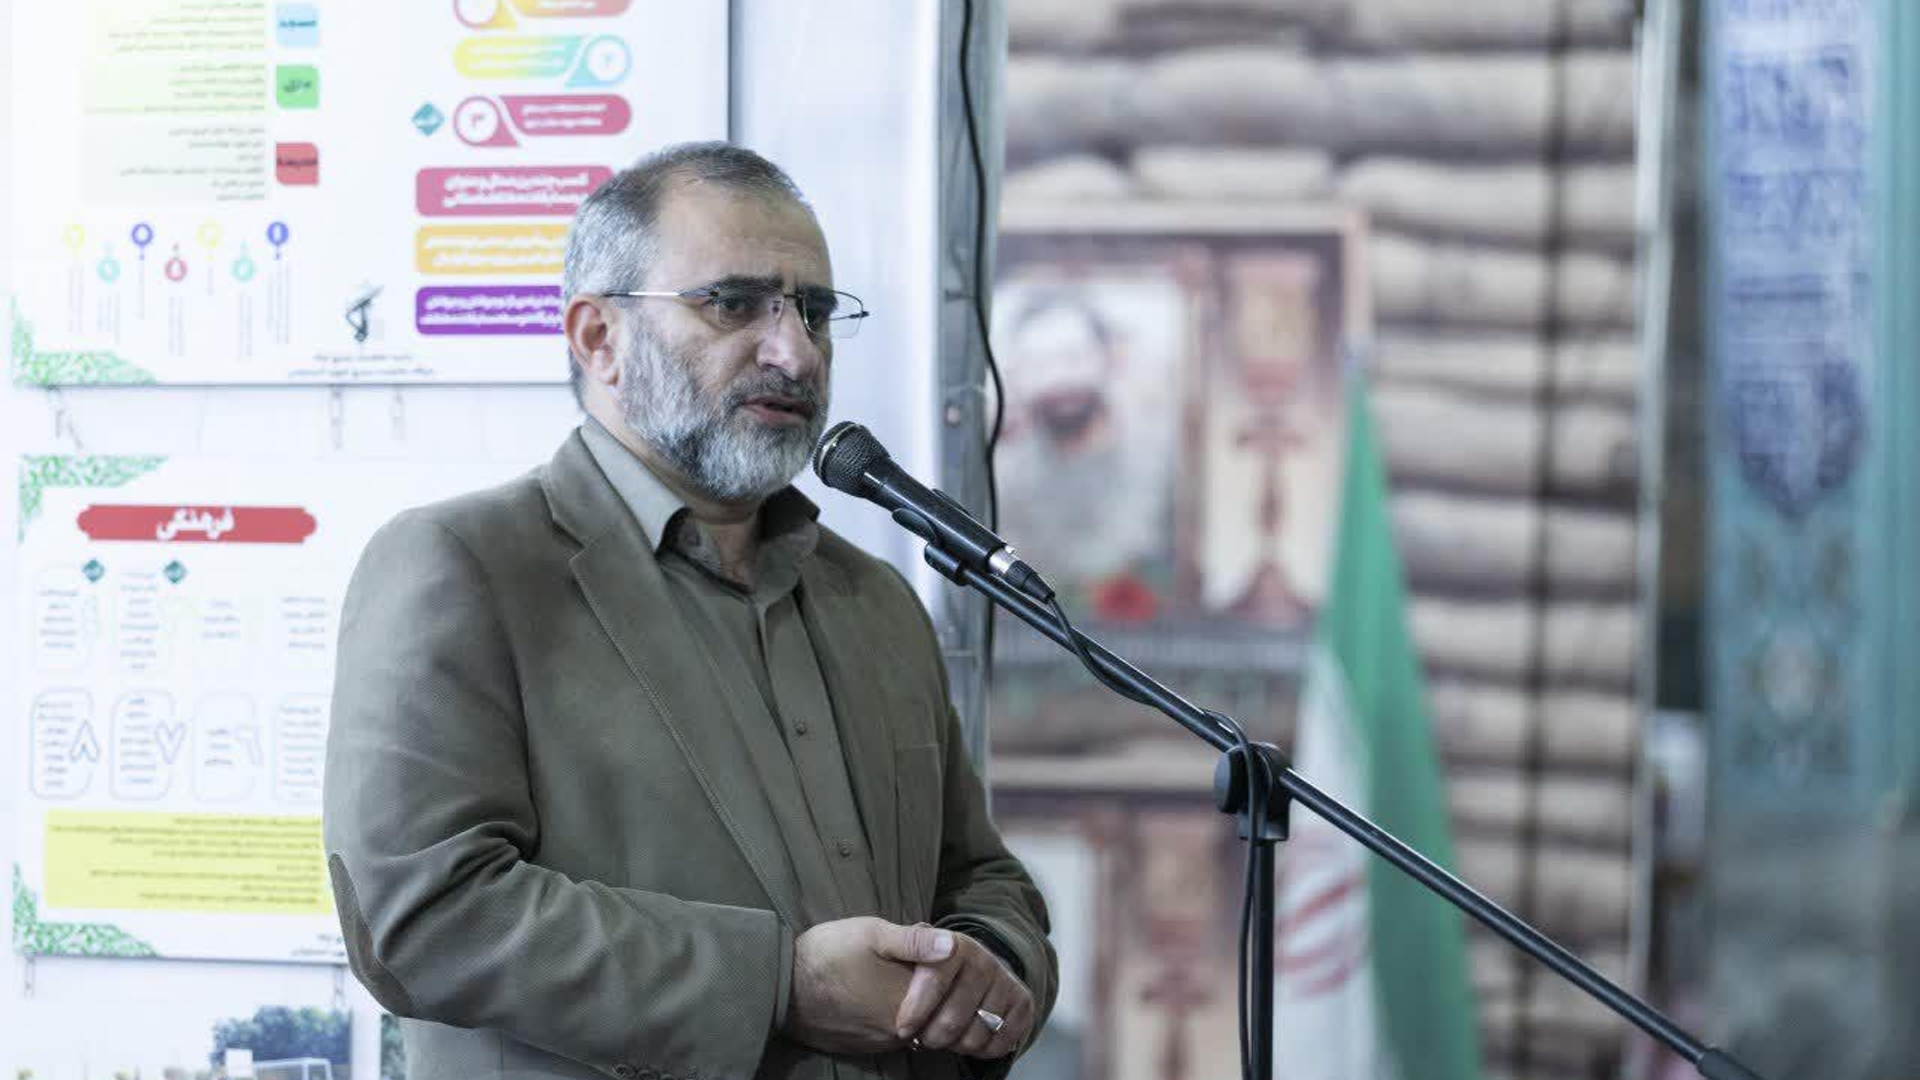 بسیج در حفظ دستاوردهای انقلاب اسلامی نقش کلیدی دارد